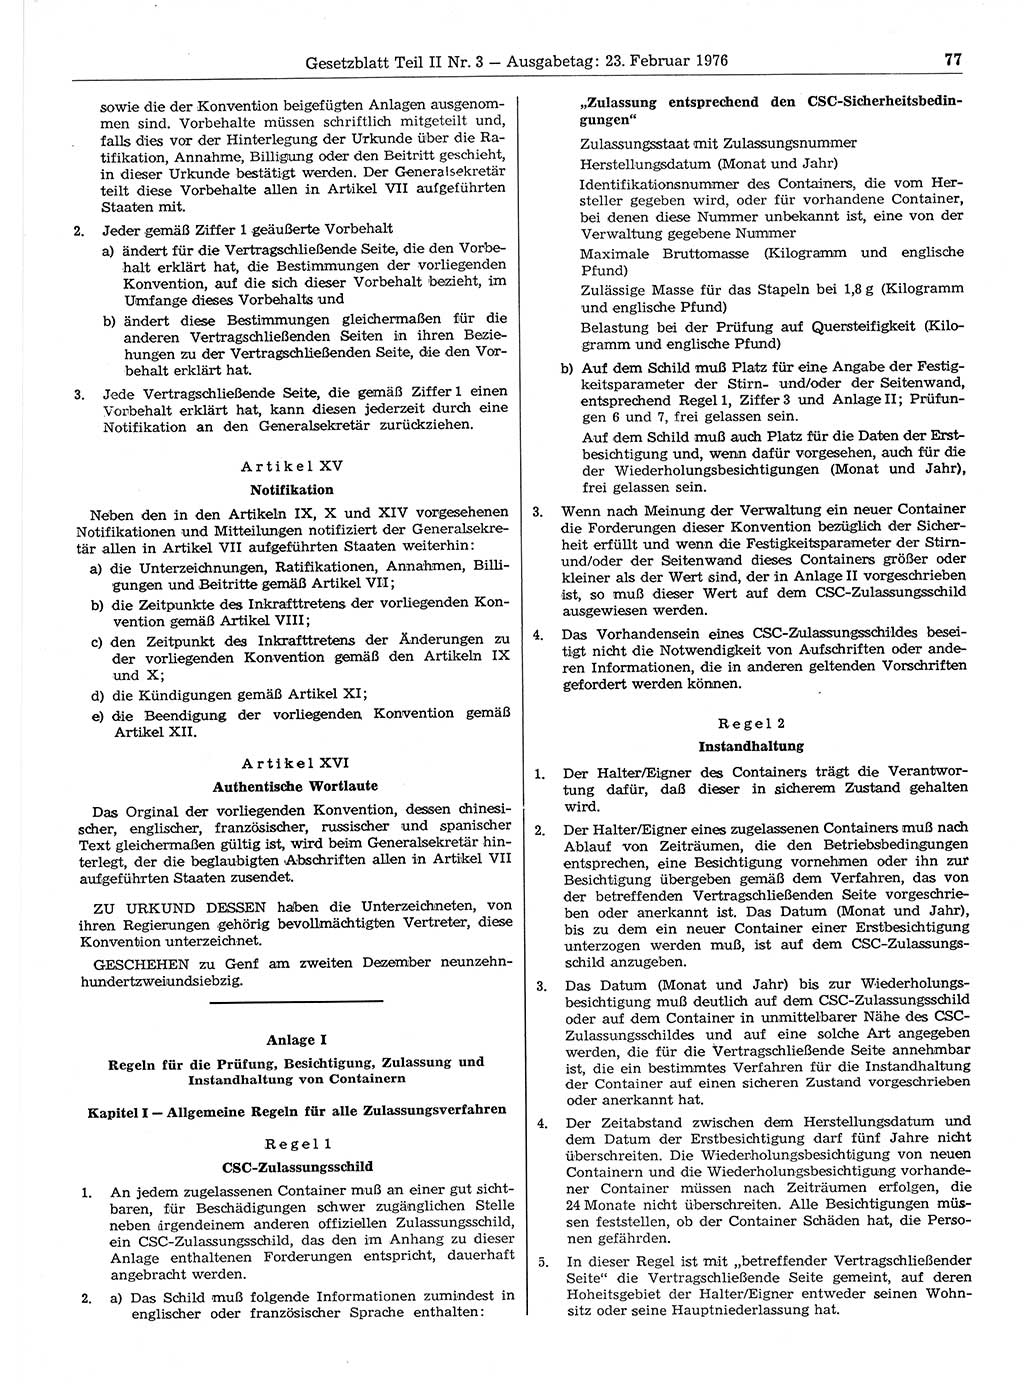 Gesetzblatt (GBl.) der Deutschen Demokratischen Republik (DDR) Teil ⅠⅠ 1976, Seite 77 (GBl. DDR ⅠⅠ 1976, S. 77)